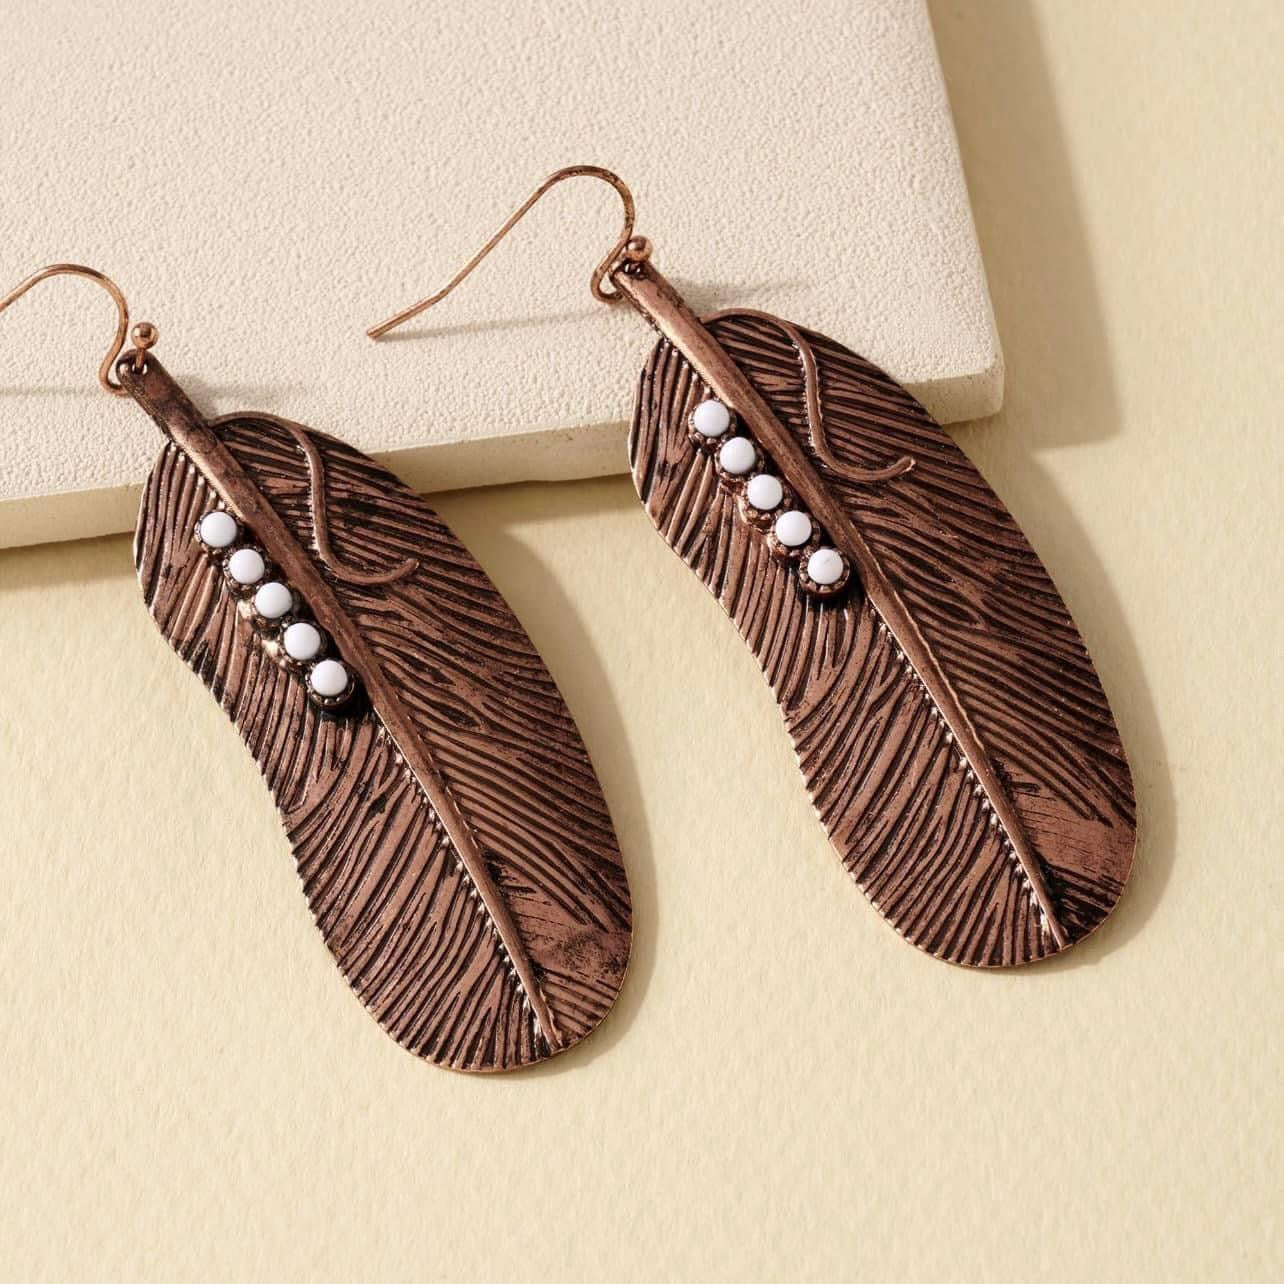 Western Feather Dangling Earrings - Bronze & Ivory